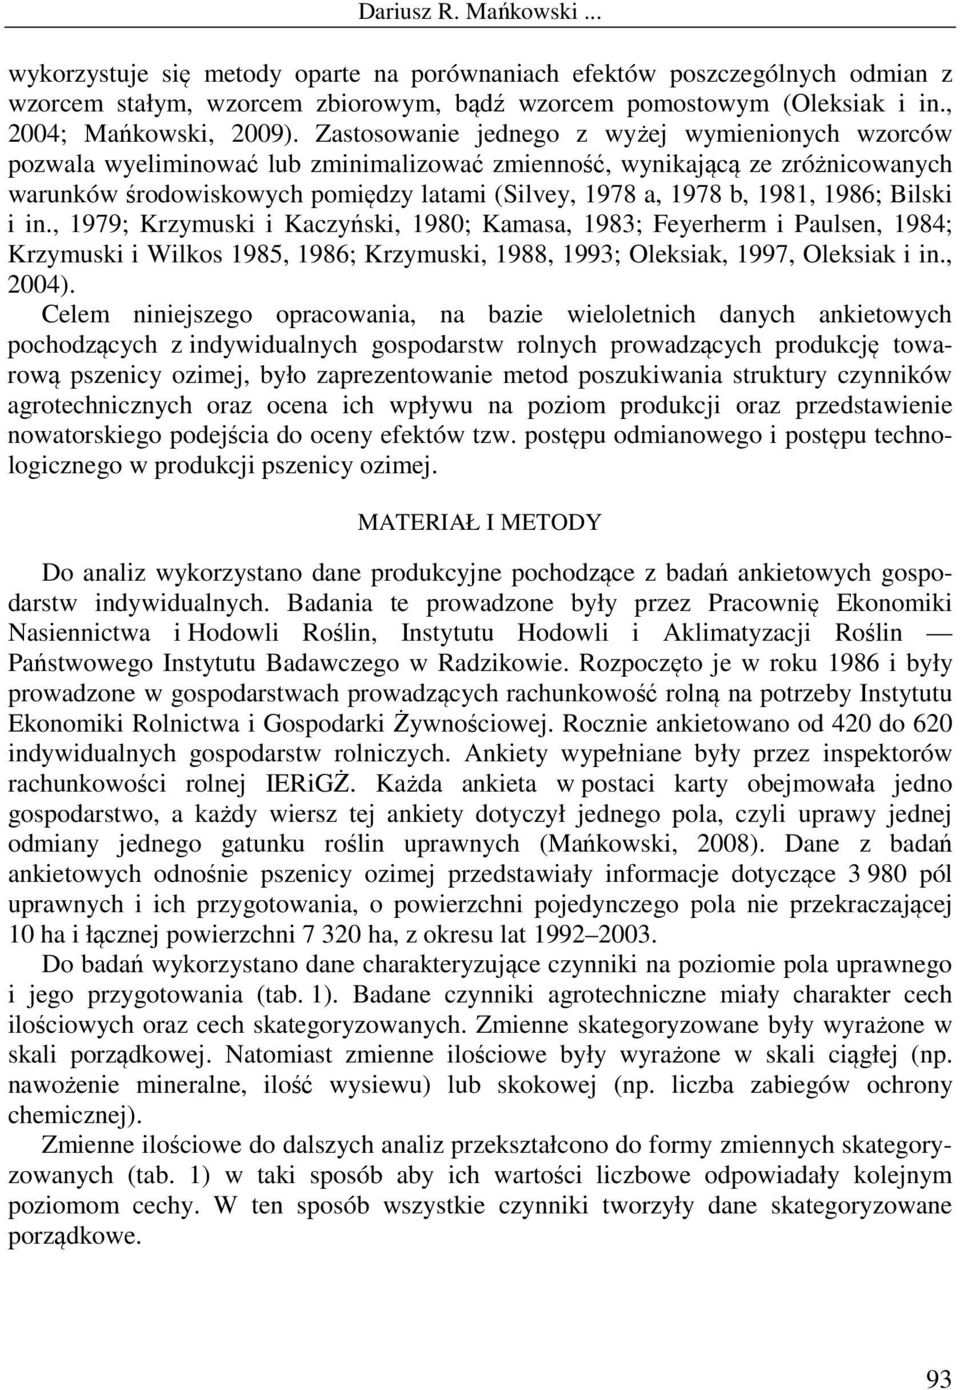 1981, 1986; Bilski i in., 1979; Krzymuski i Kaczyński, 1980; Kamasa, 1983; Feyerherm i Paulsen, 1984; Krzymuski i Wilkos 1985, 1986; Krzymuski, 1988, 1993; Oleksiak, 1997, Oleksiak i in., 2004).